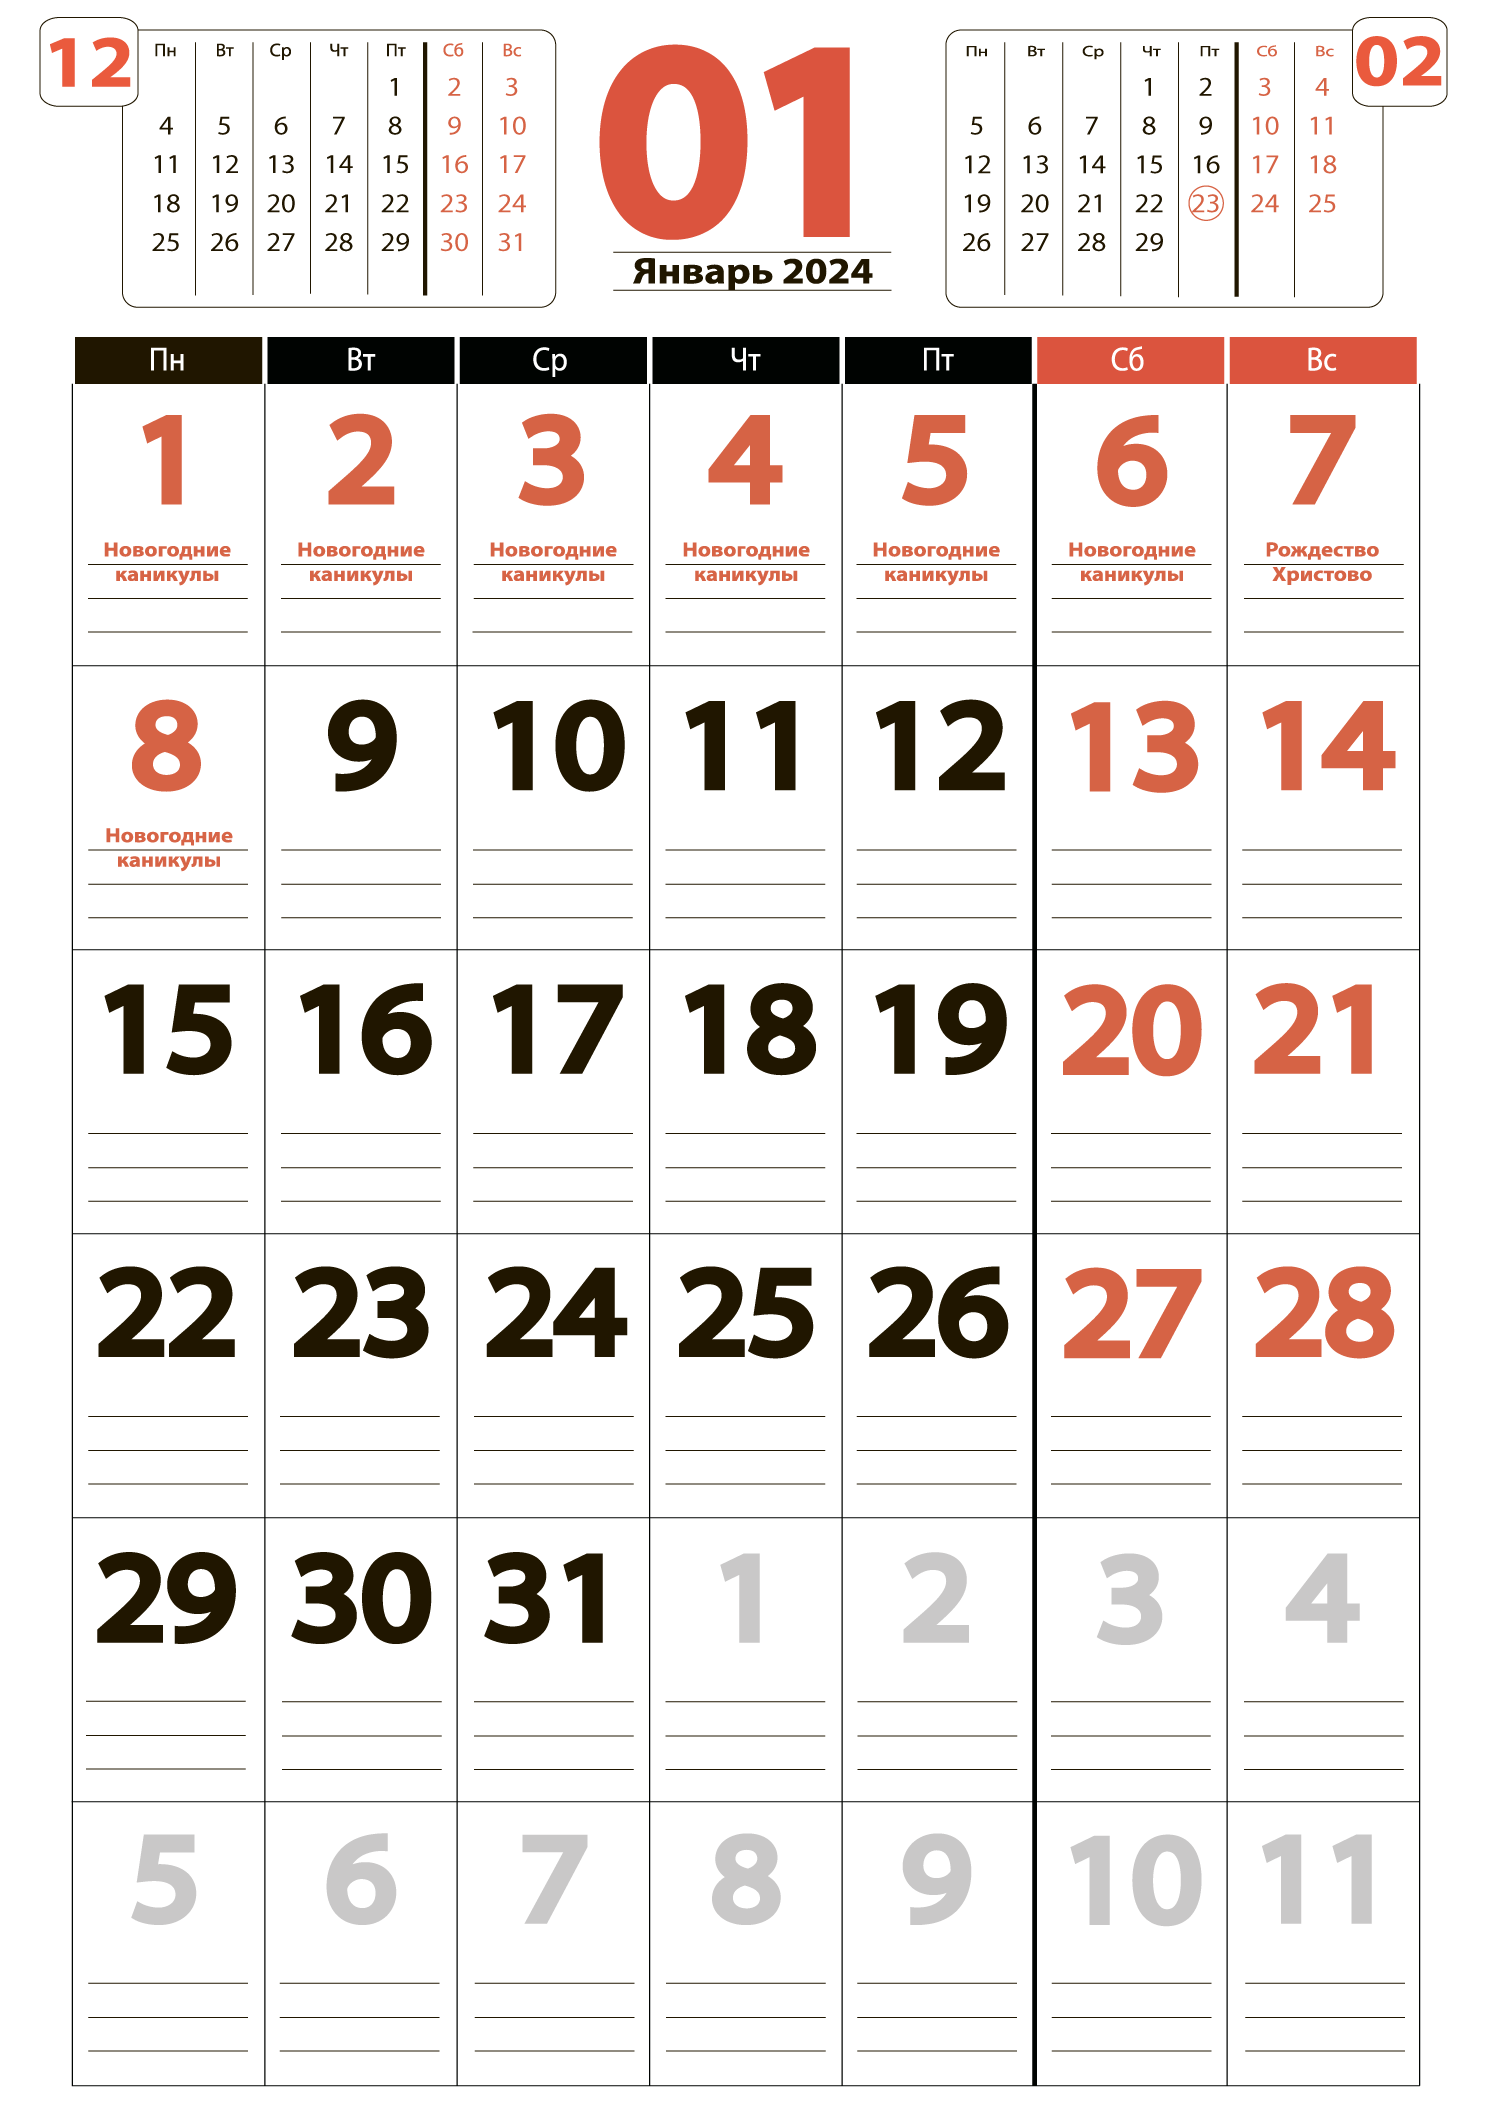 Печать крупного календаря на январь 2024